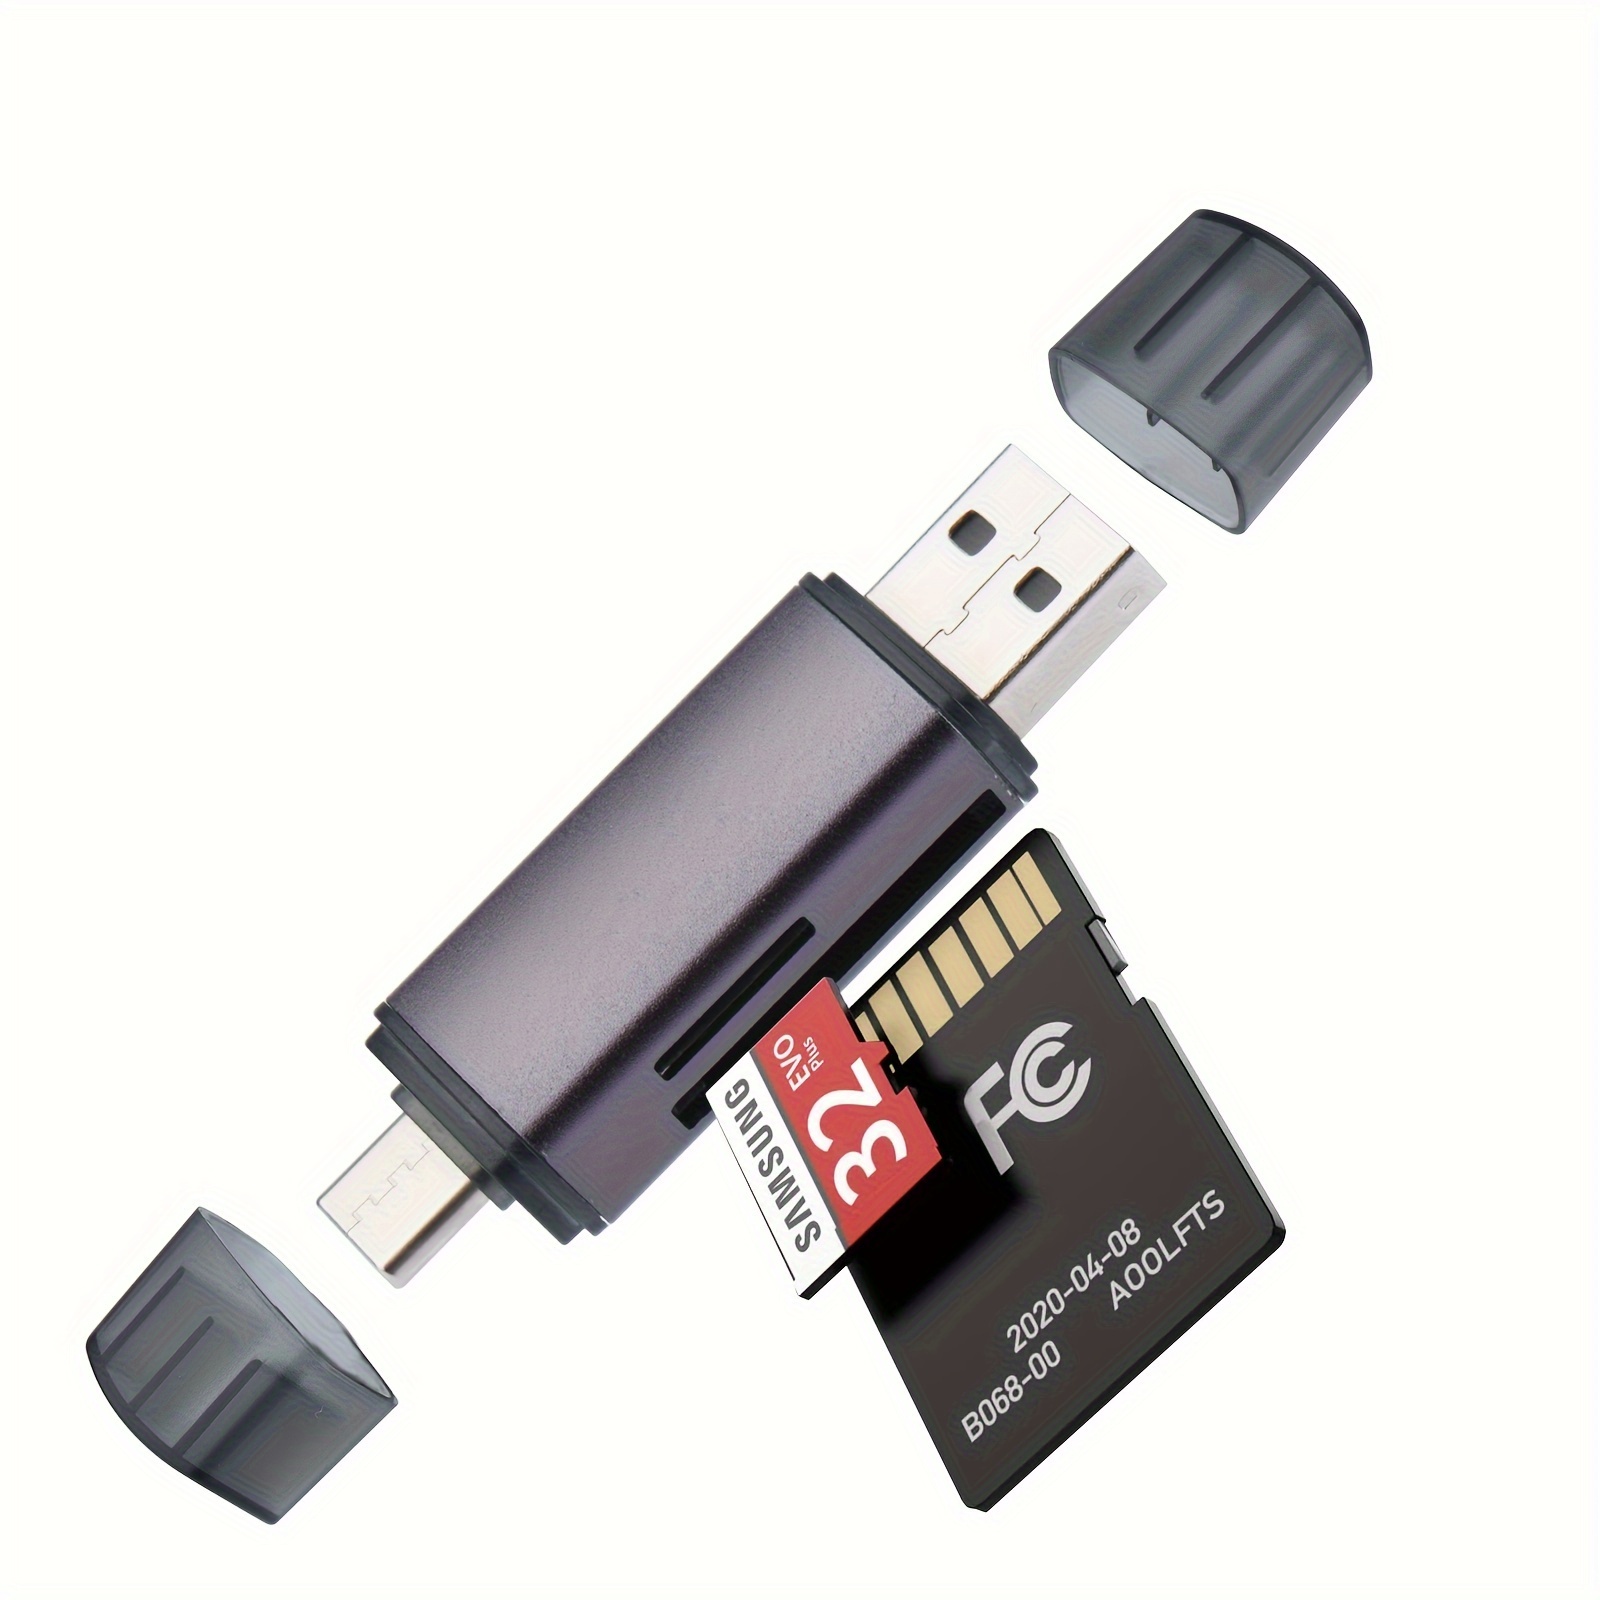 Samsung carte microSDXC 128 Go PRO Plus avec clé USB - Carte mémoire -  Samsung